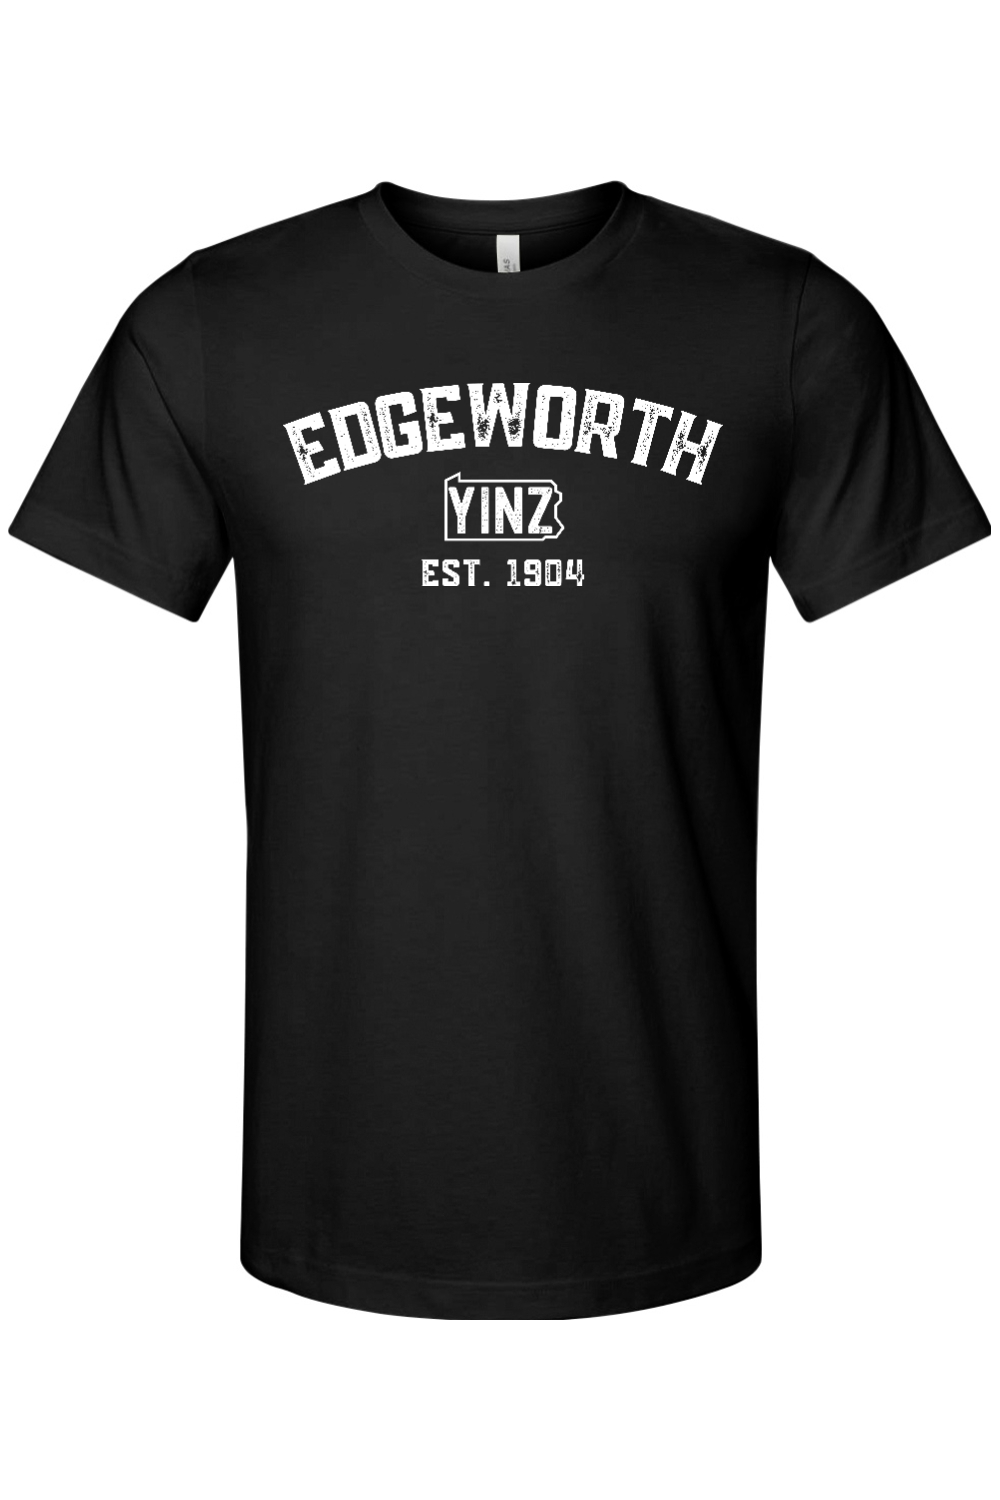 Edgeworth Yinzylvania - Yinzylvania